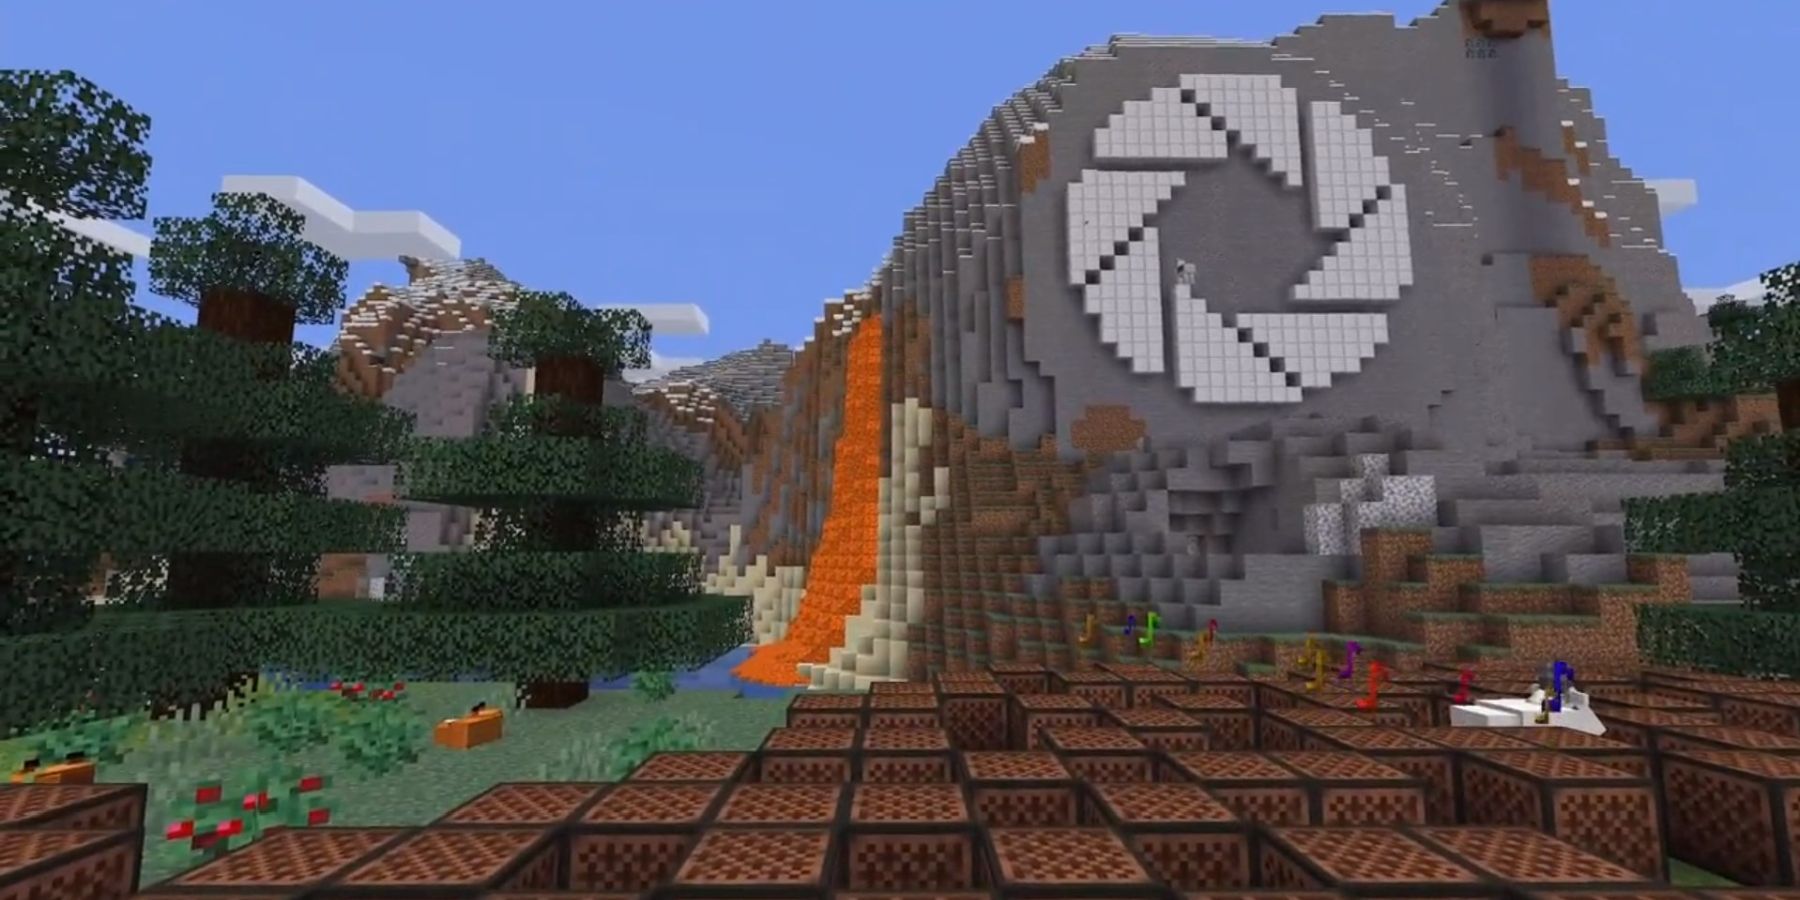 Il giocatore di Minecraft crea la copertina di “Still Alive” dal portale usando i blocchi di note